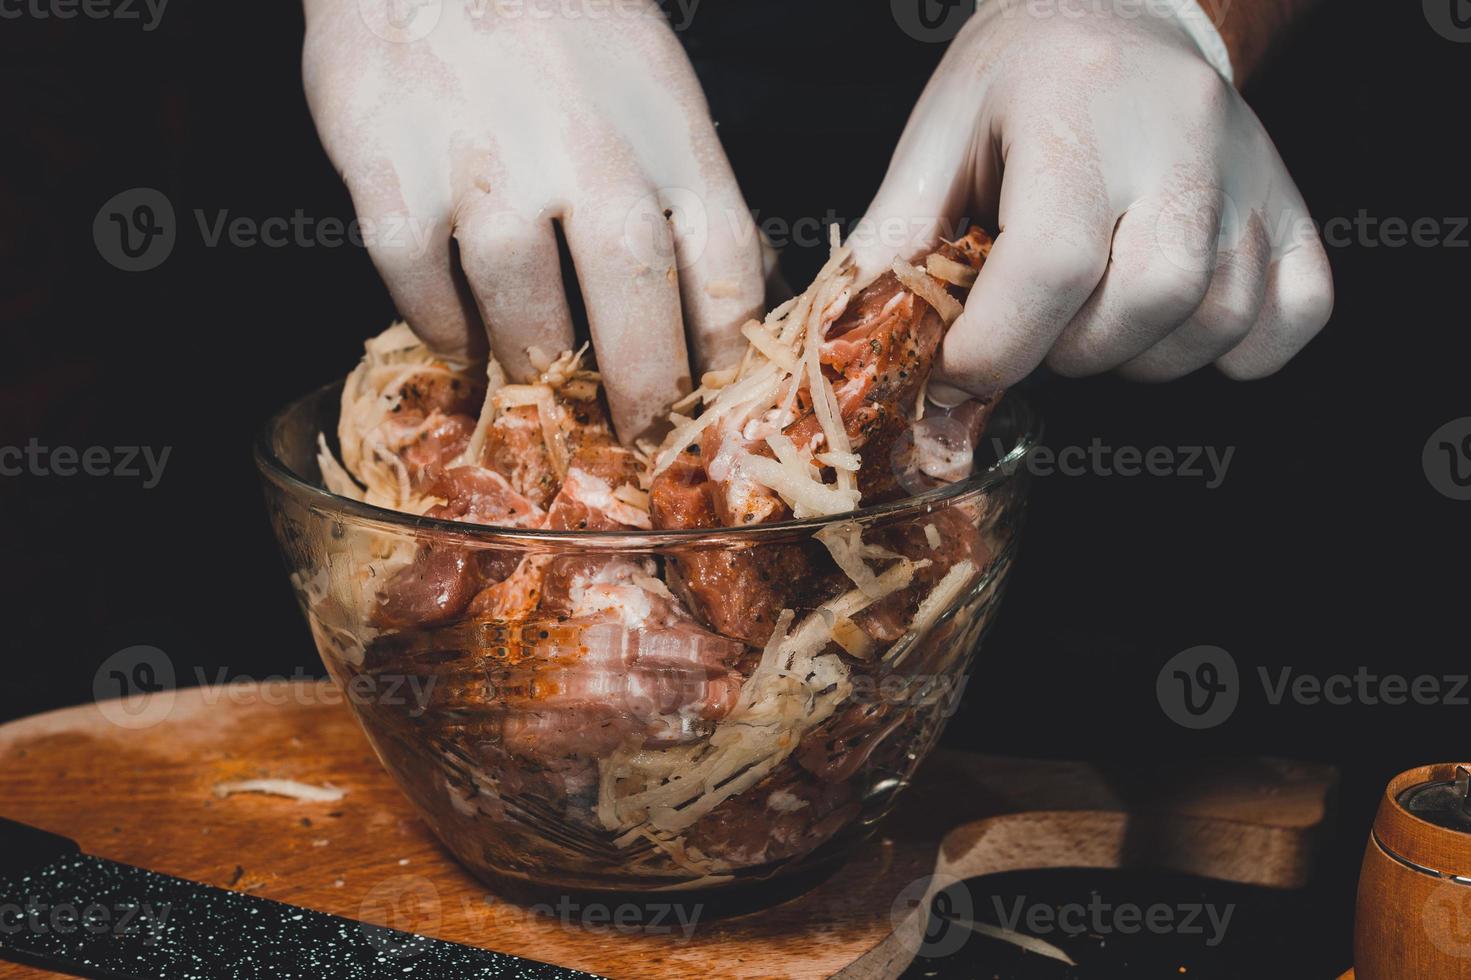 faire mariner du porc cru pour la cuisson des brochettes et du jambon. le chef du restaurant en gants régale la viande avec du basilic et des épices au curry. photo